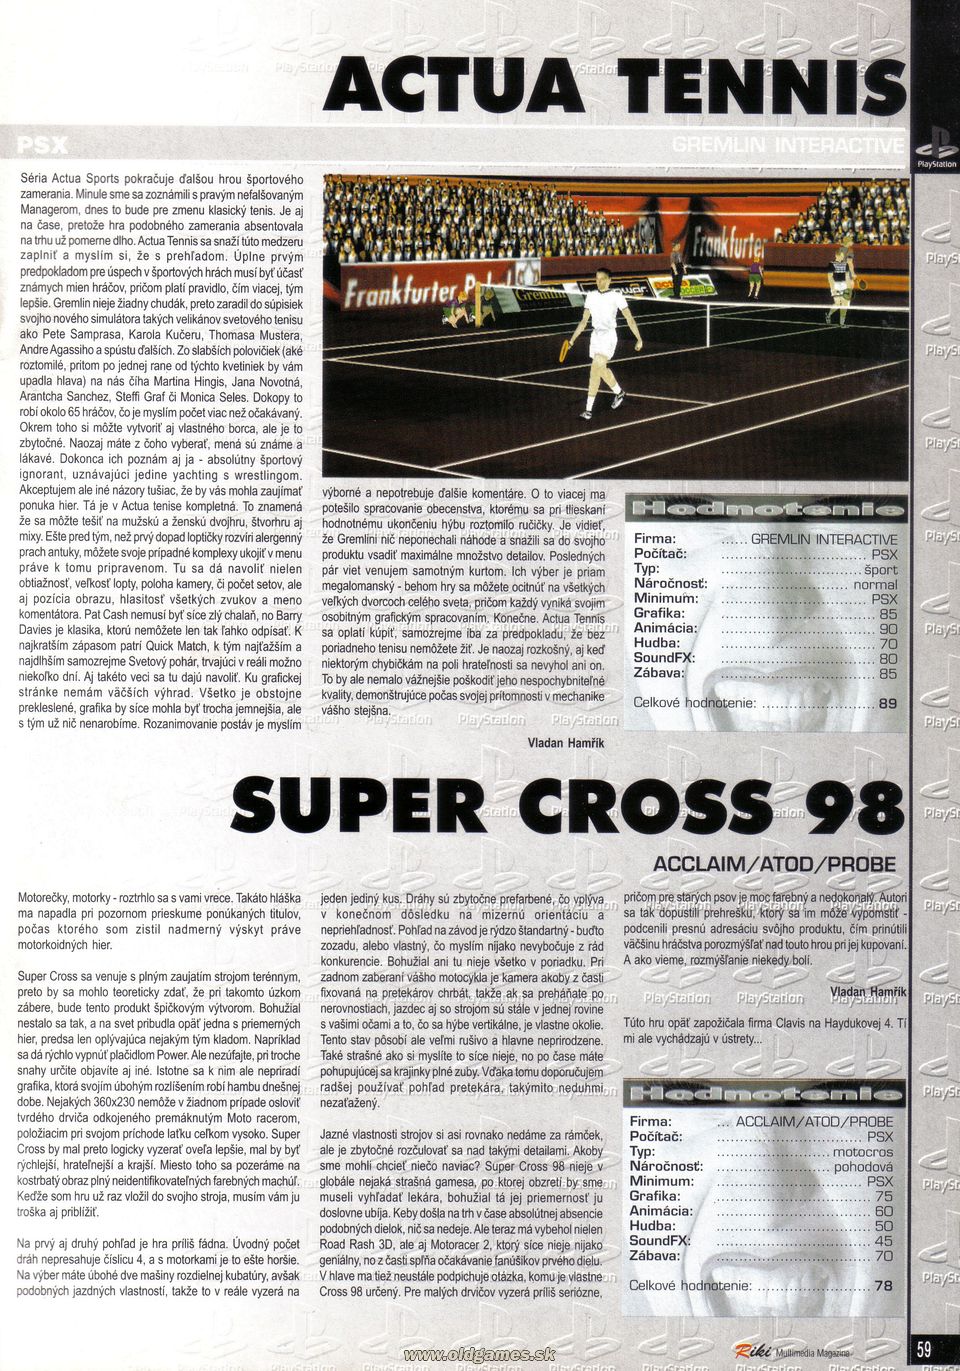 Actula Tennis, Super Cross 98